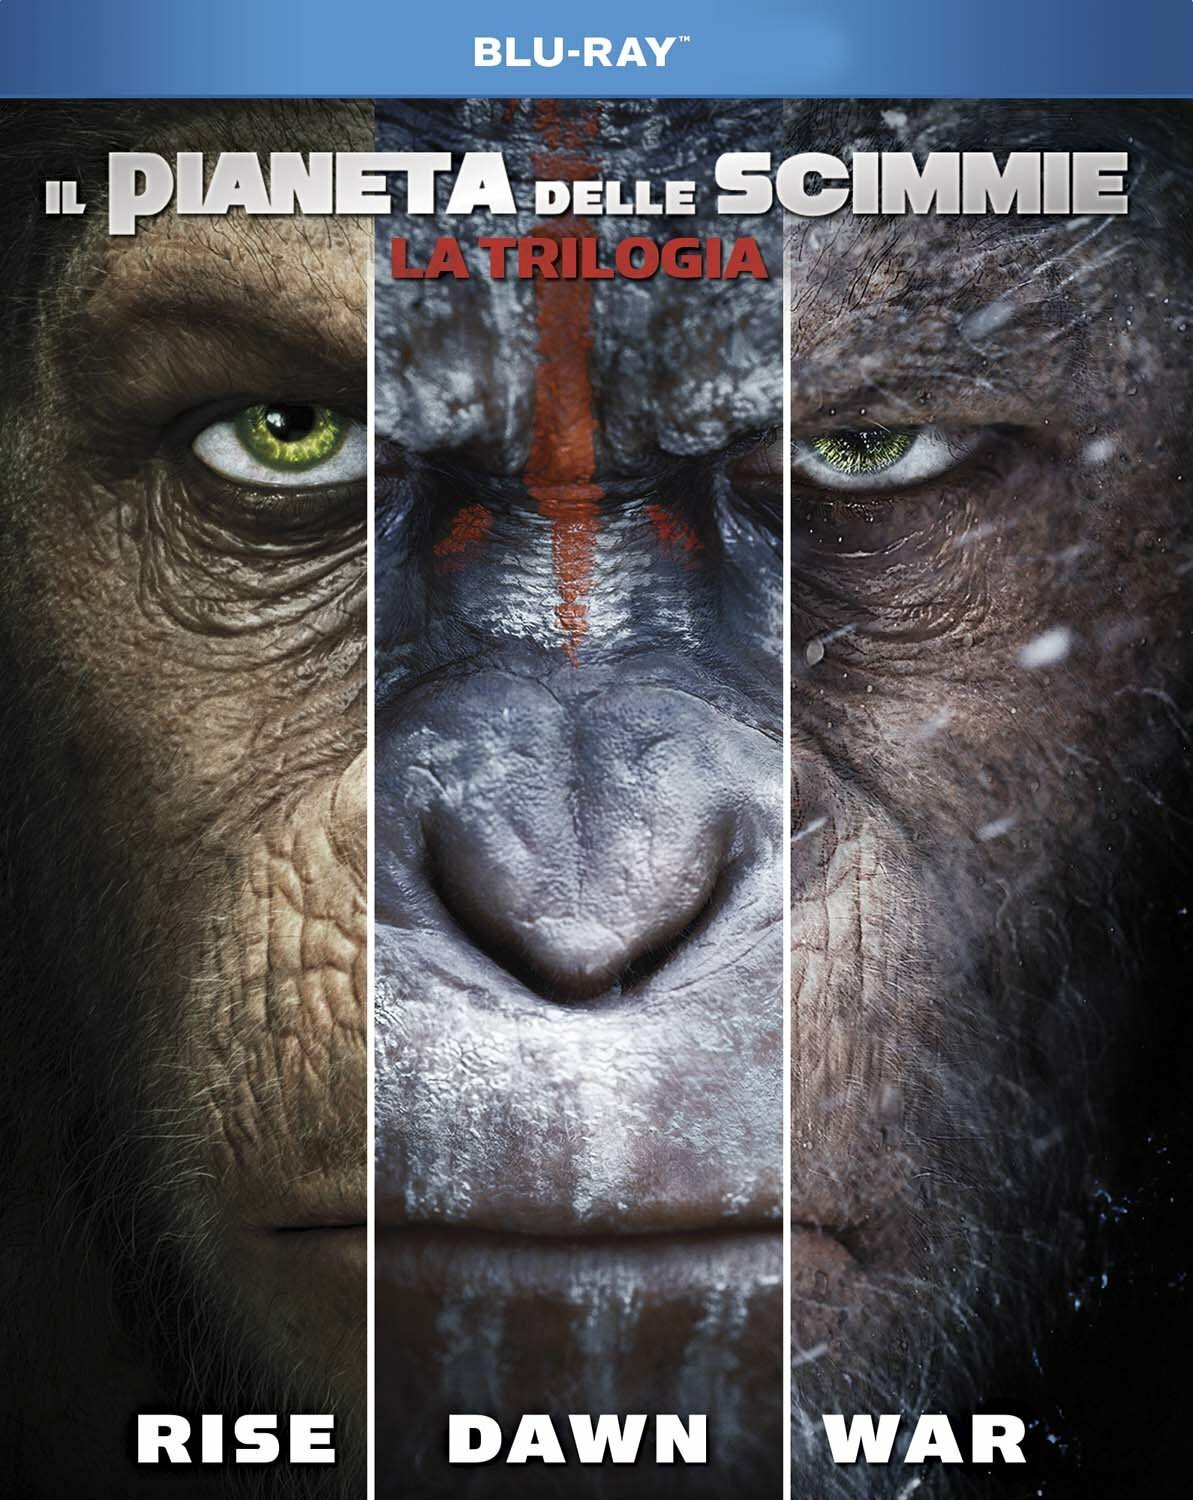 I tre volti delle scimmie protagonista delle saga de Il pianeta delle scimmie